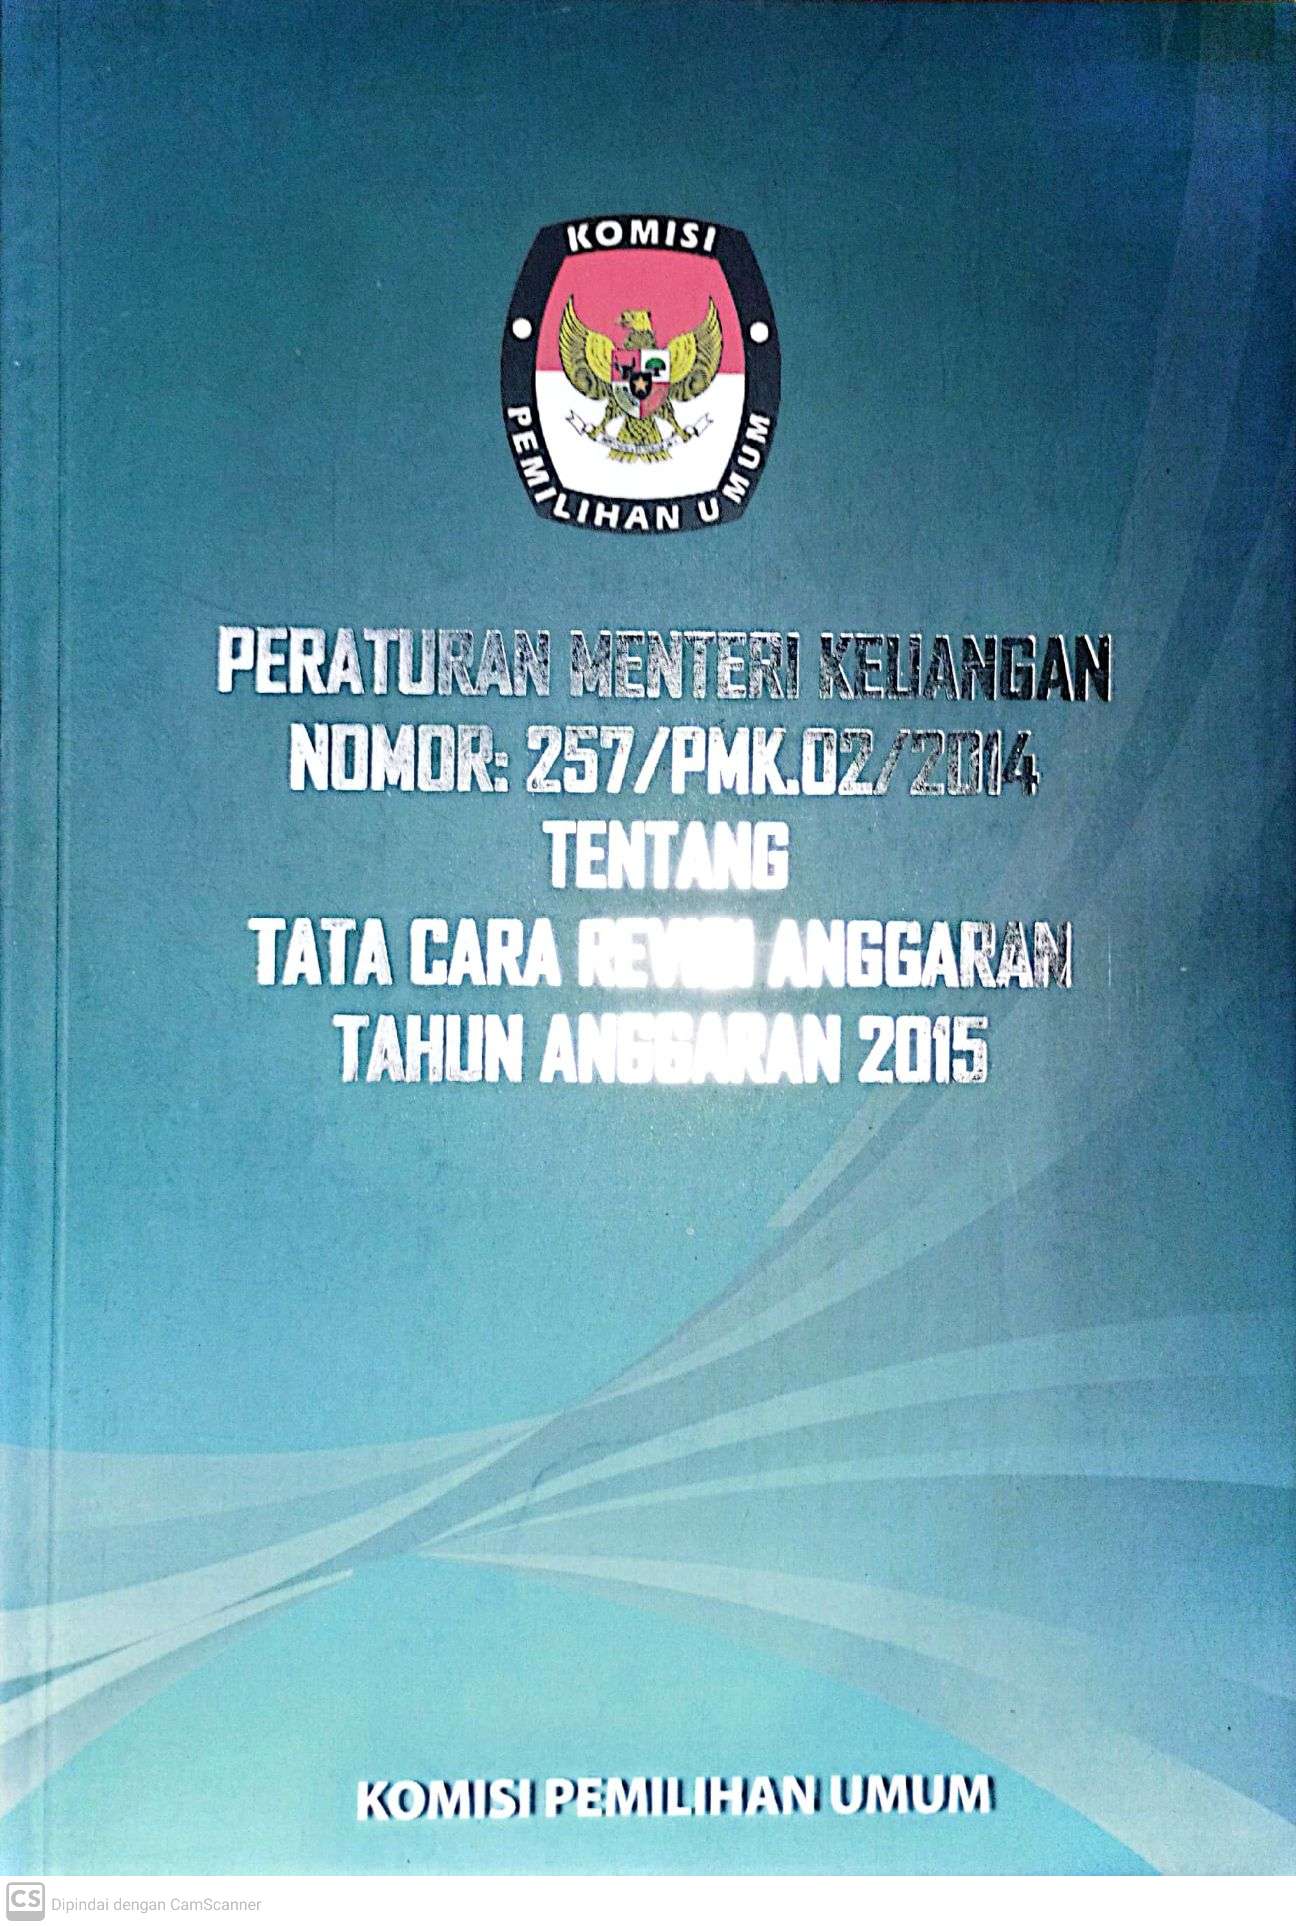 Peraturan Menteri Keuangan Nomor: 257/PMK.02/2014 Tentang Tata Cara Revisi Anggaran Tahun Anggaran 2015